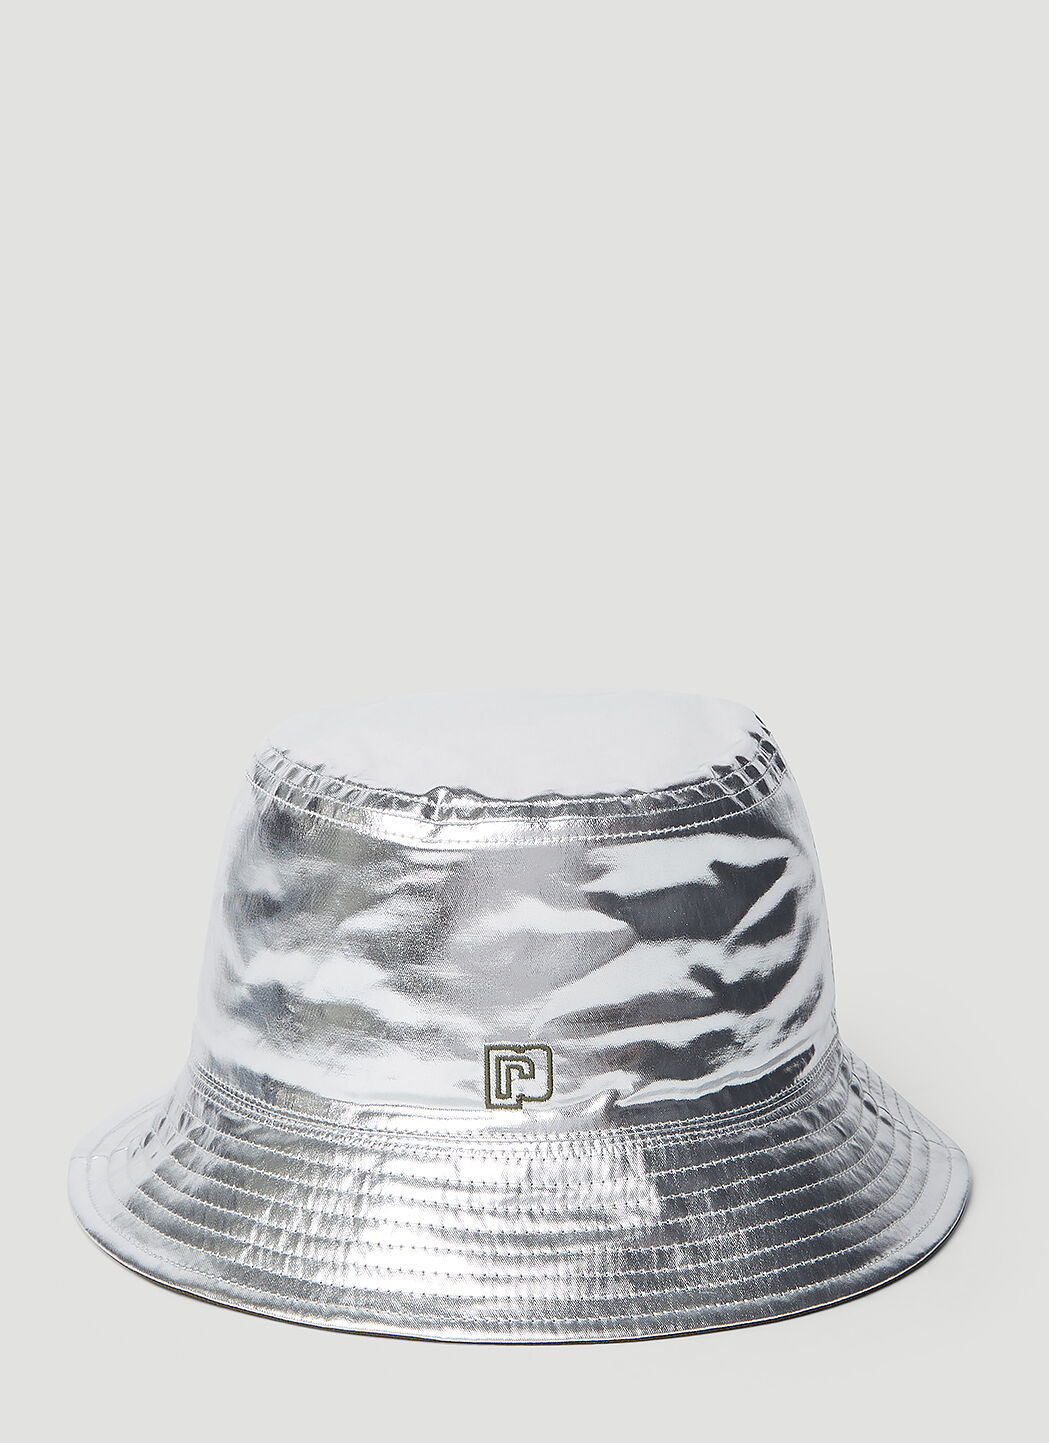 Burberry Metallic Bucket Hat Beige bur0353006